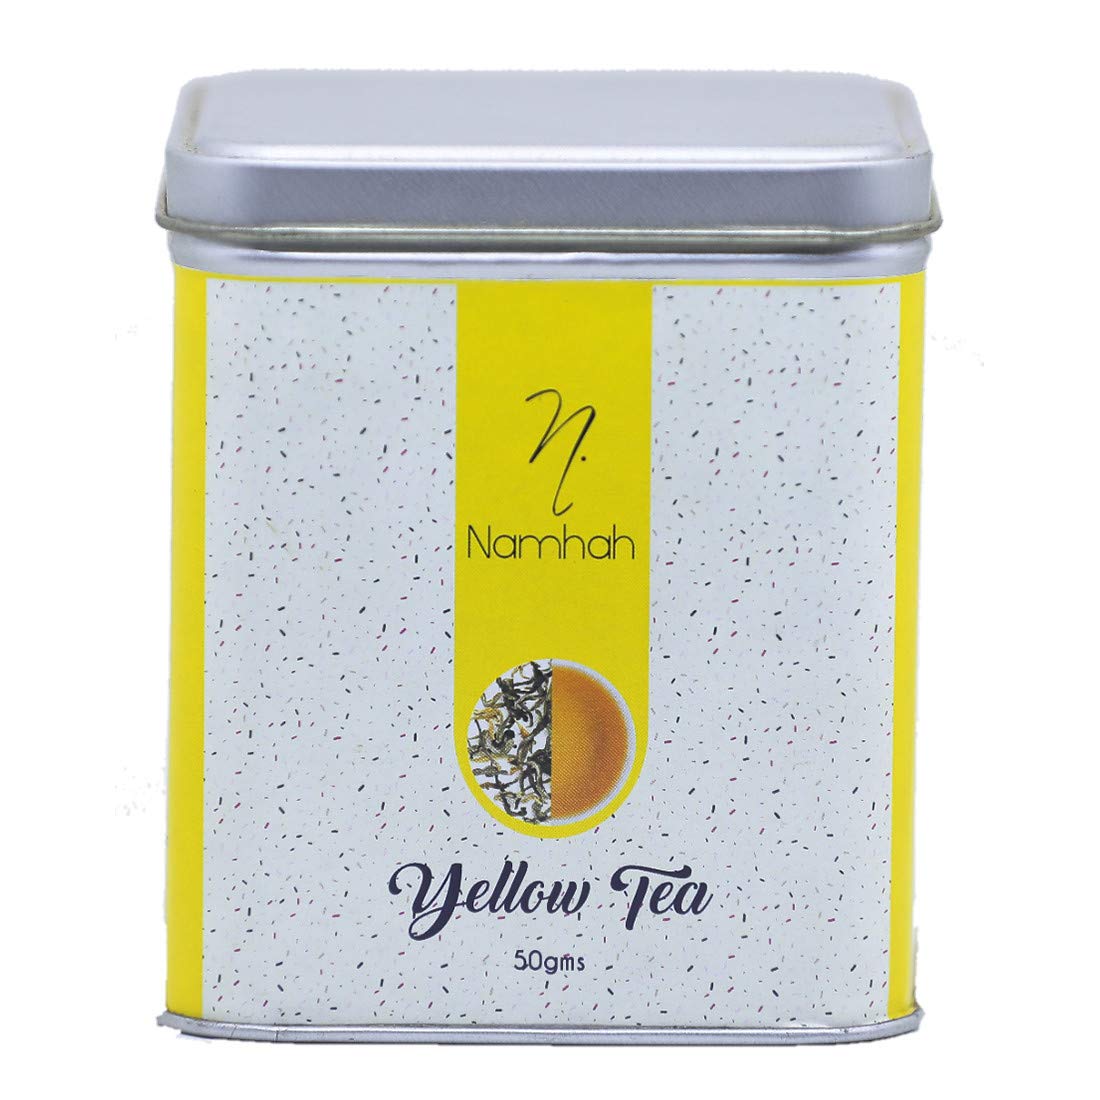 Namhah Yellow Tea 50gms: Premium Grade ...